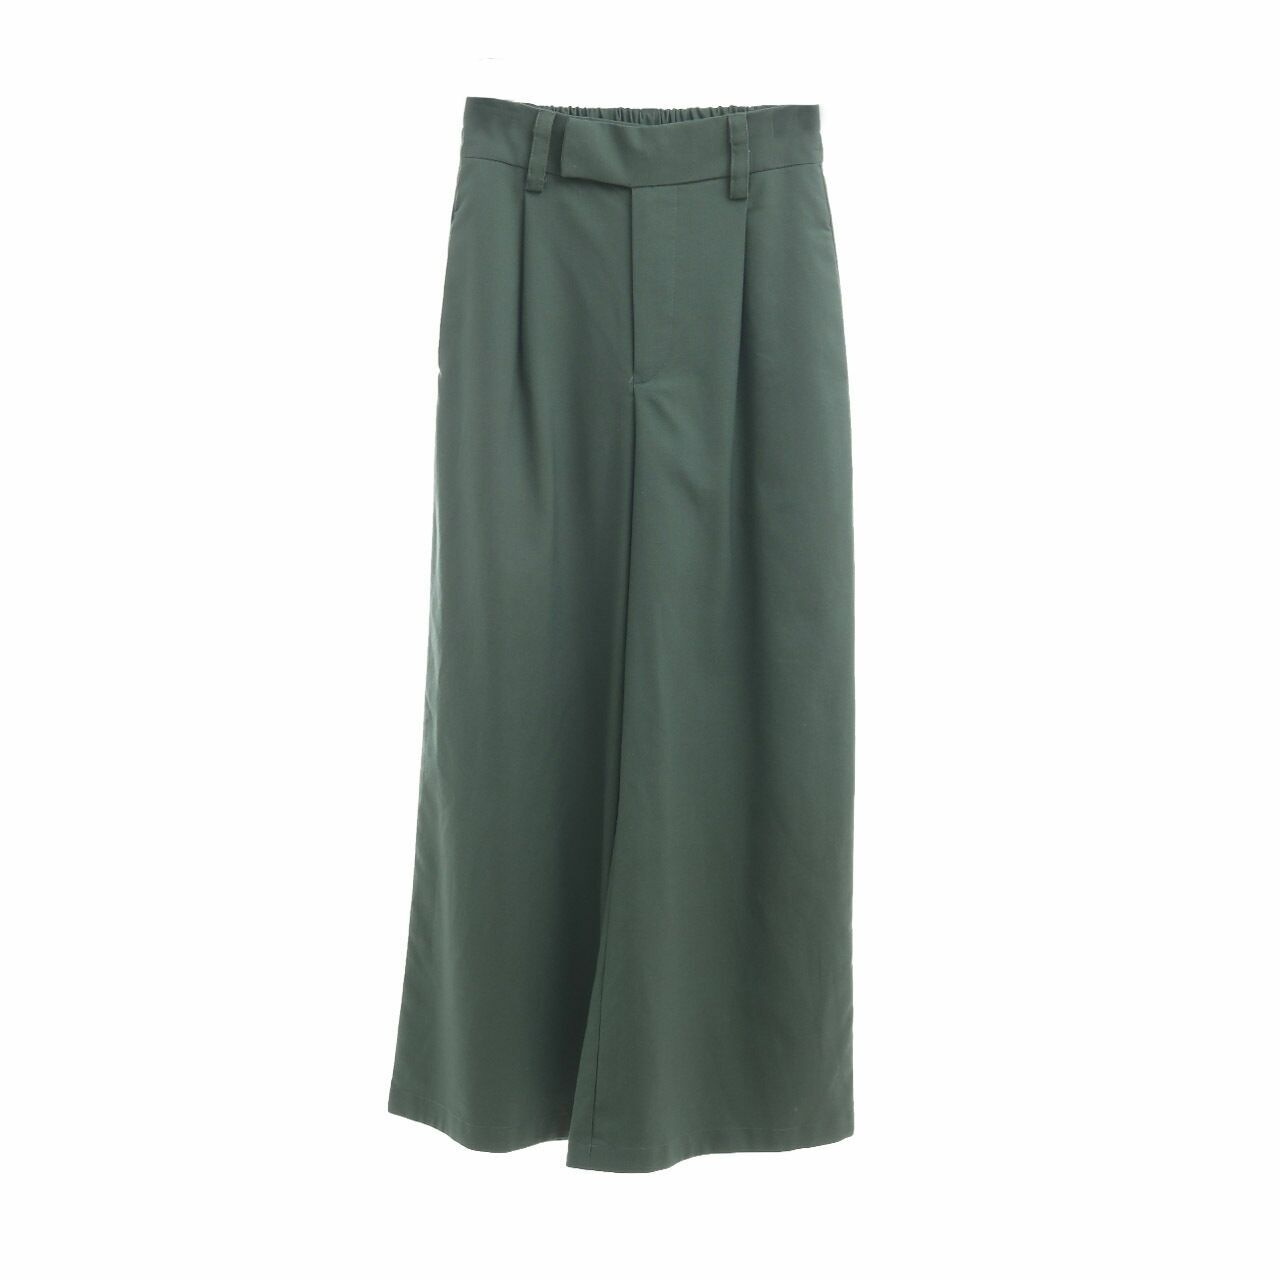 ATS The Label Green Cullotes Long Pants